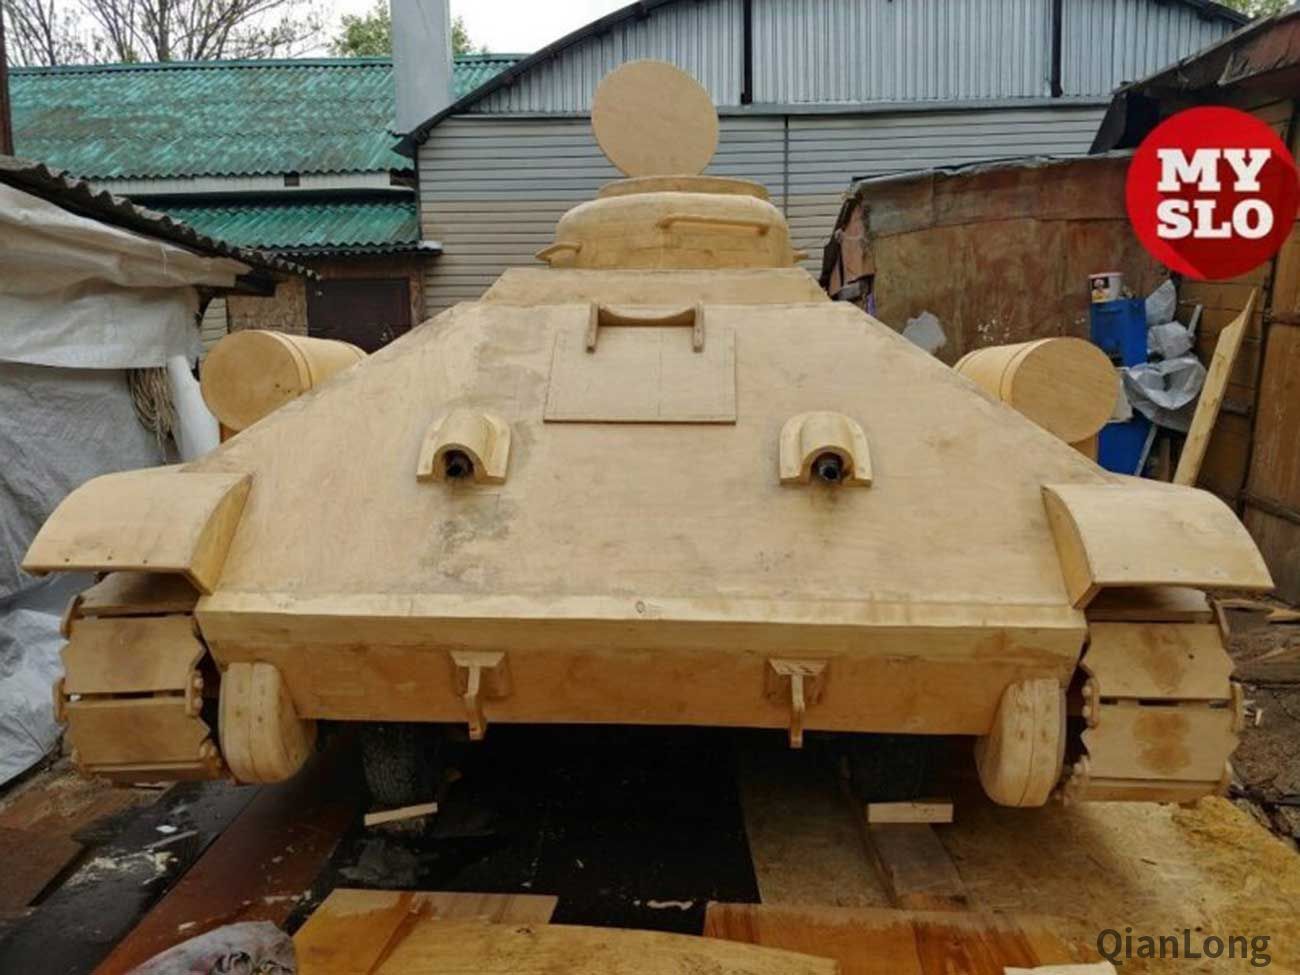 02.从后面看木匠自制的T-34坦克。